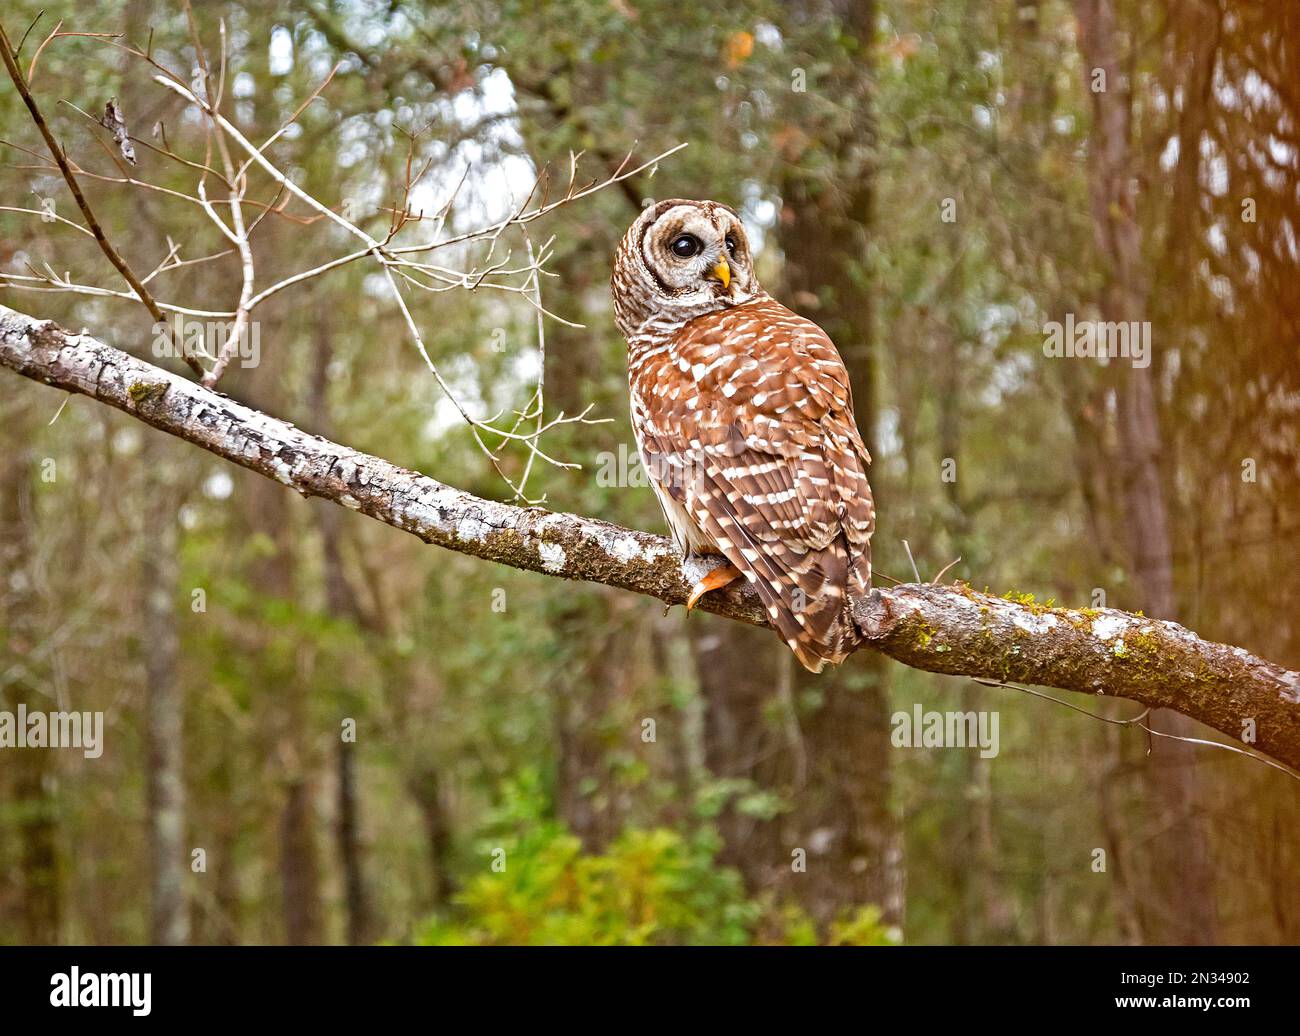 Die Eulen Barred Owls oder Strix varia sind auch bekannt, da Hoot Owls relativ groß sind, meist nachtaktive Eulen, die fast alles aus Fleisch fressen Stockfoto